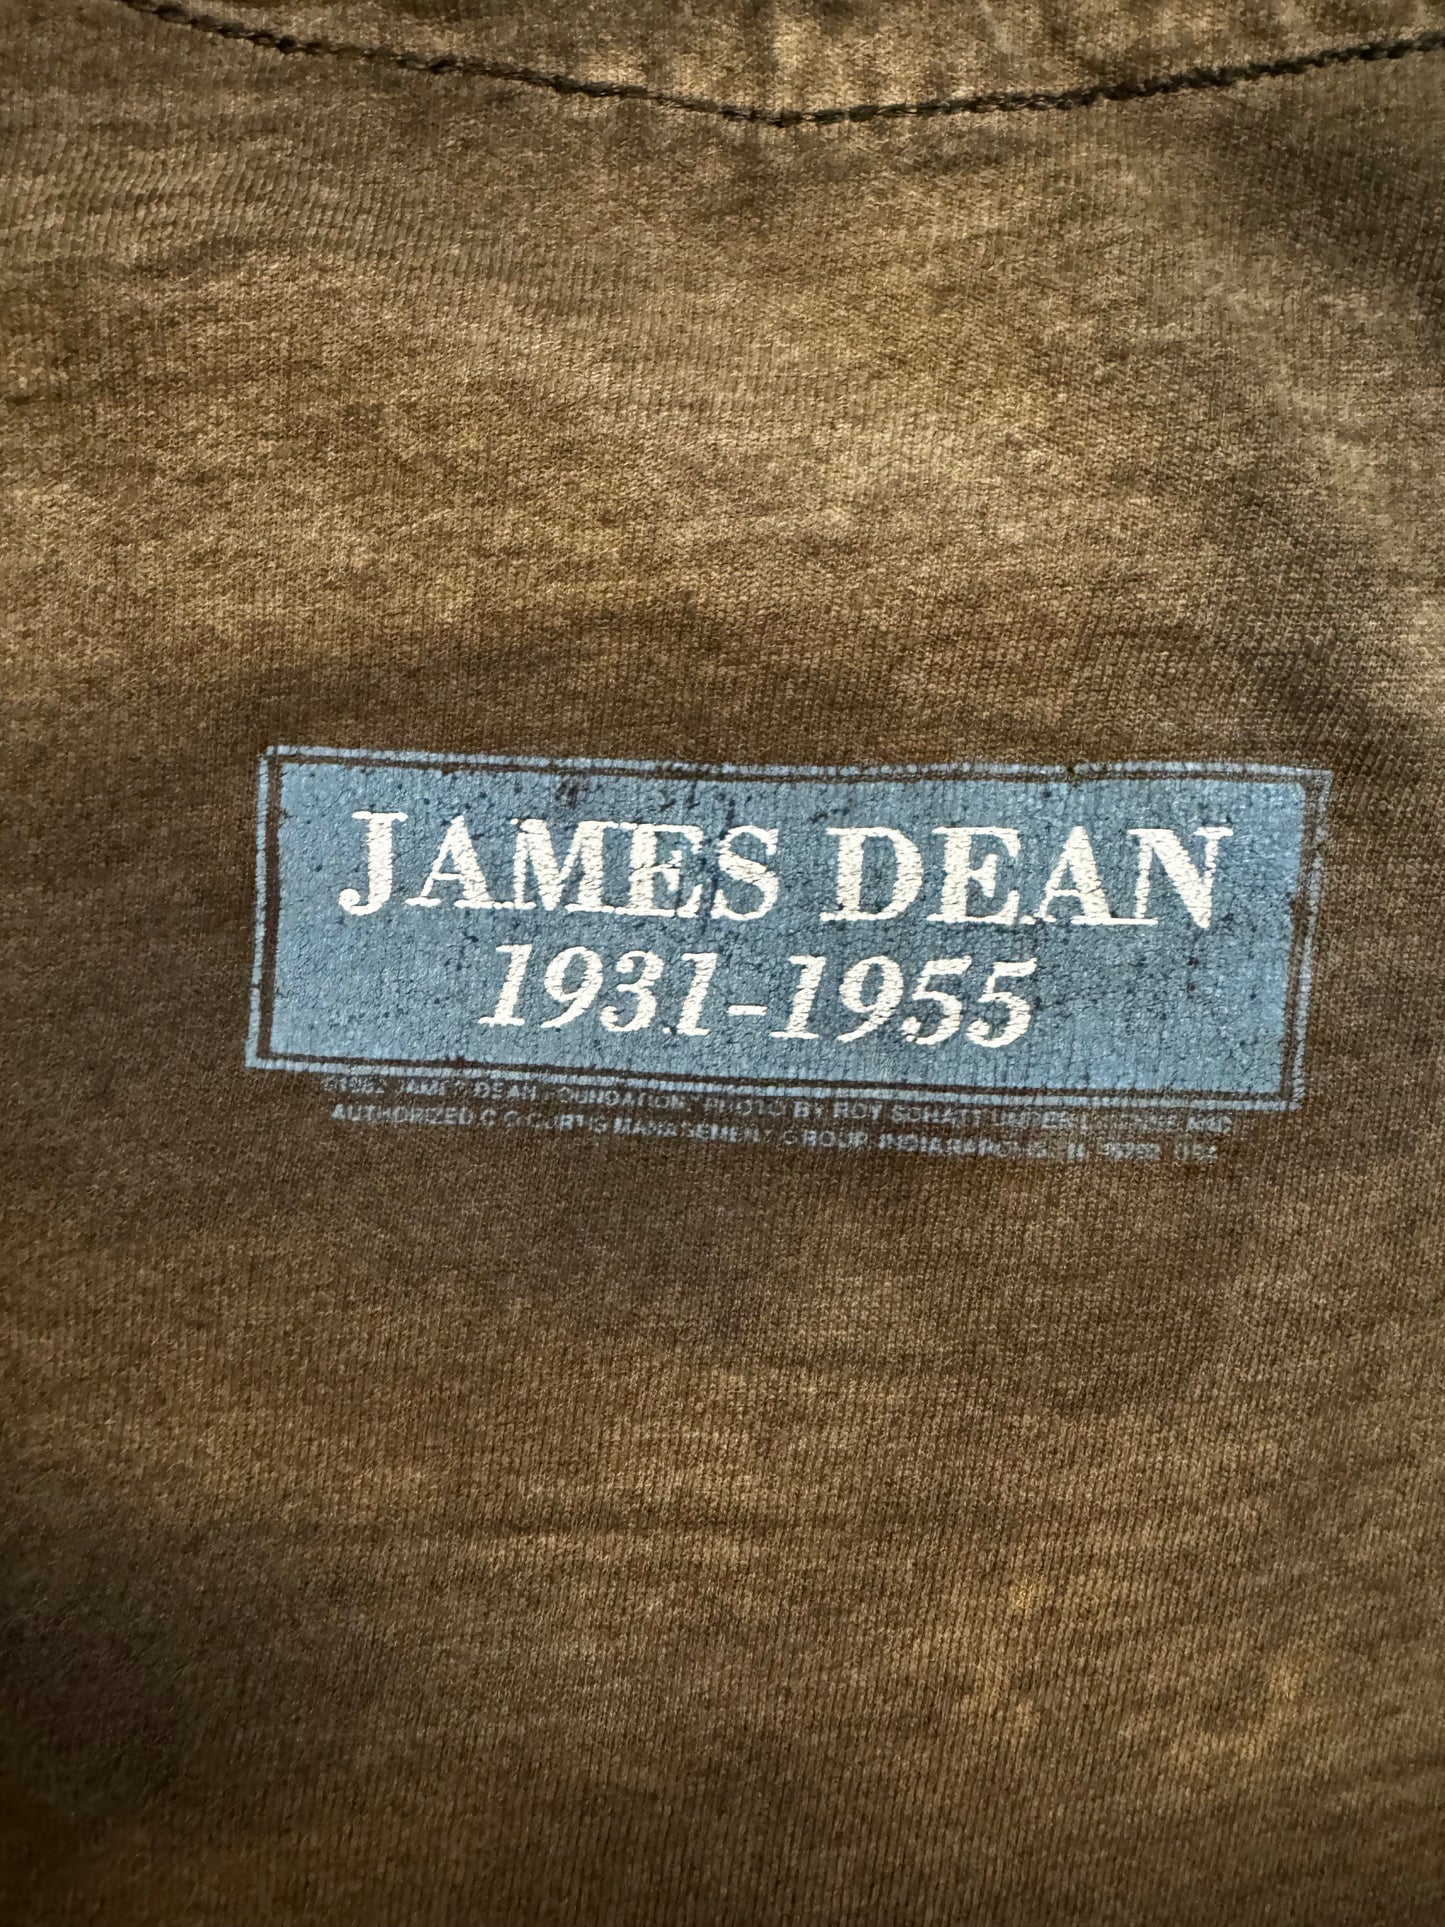 1980's James Dean Memorial Vintage T Shirt